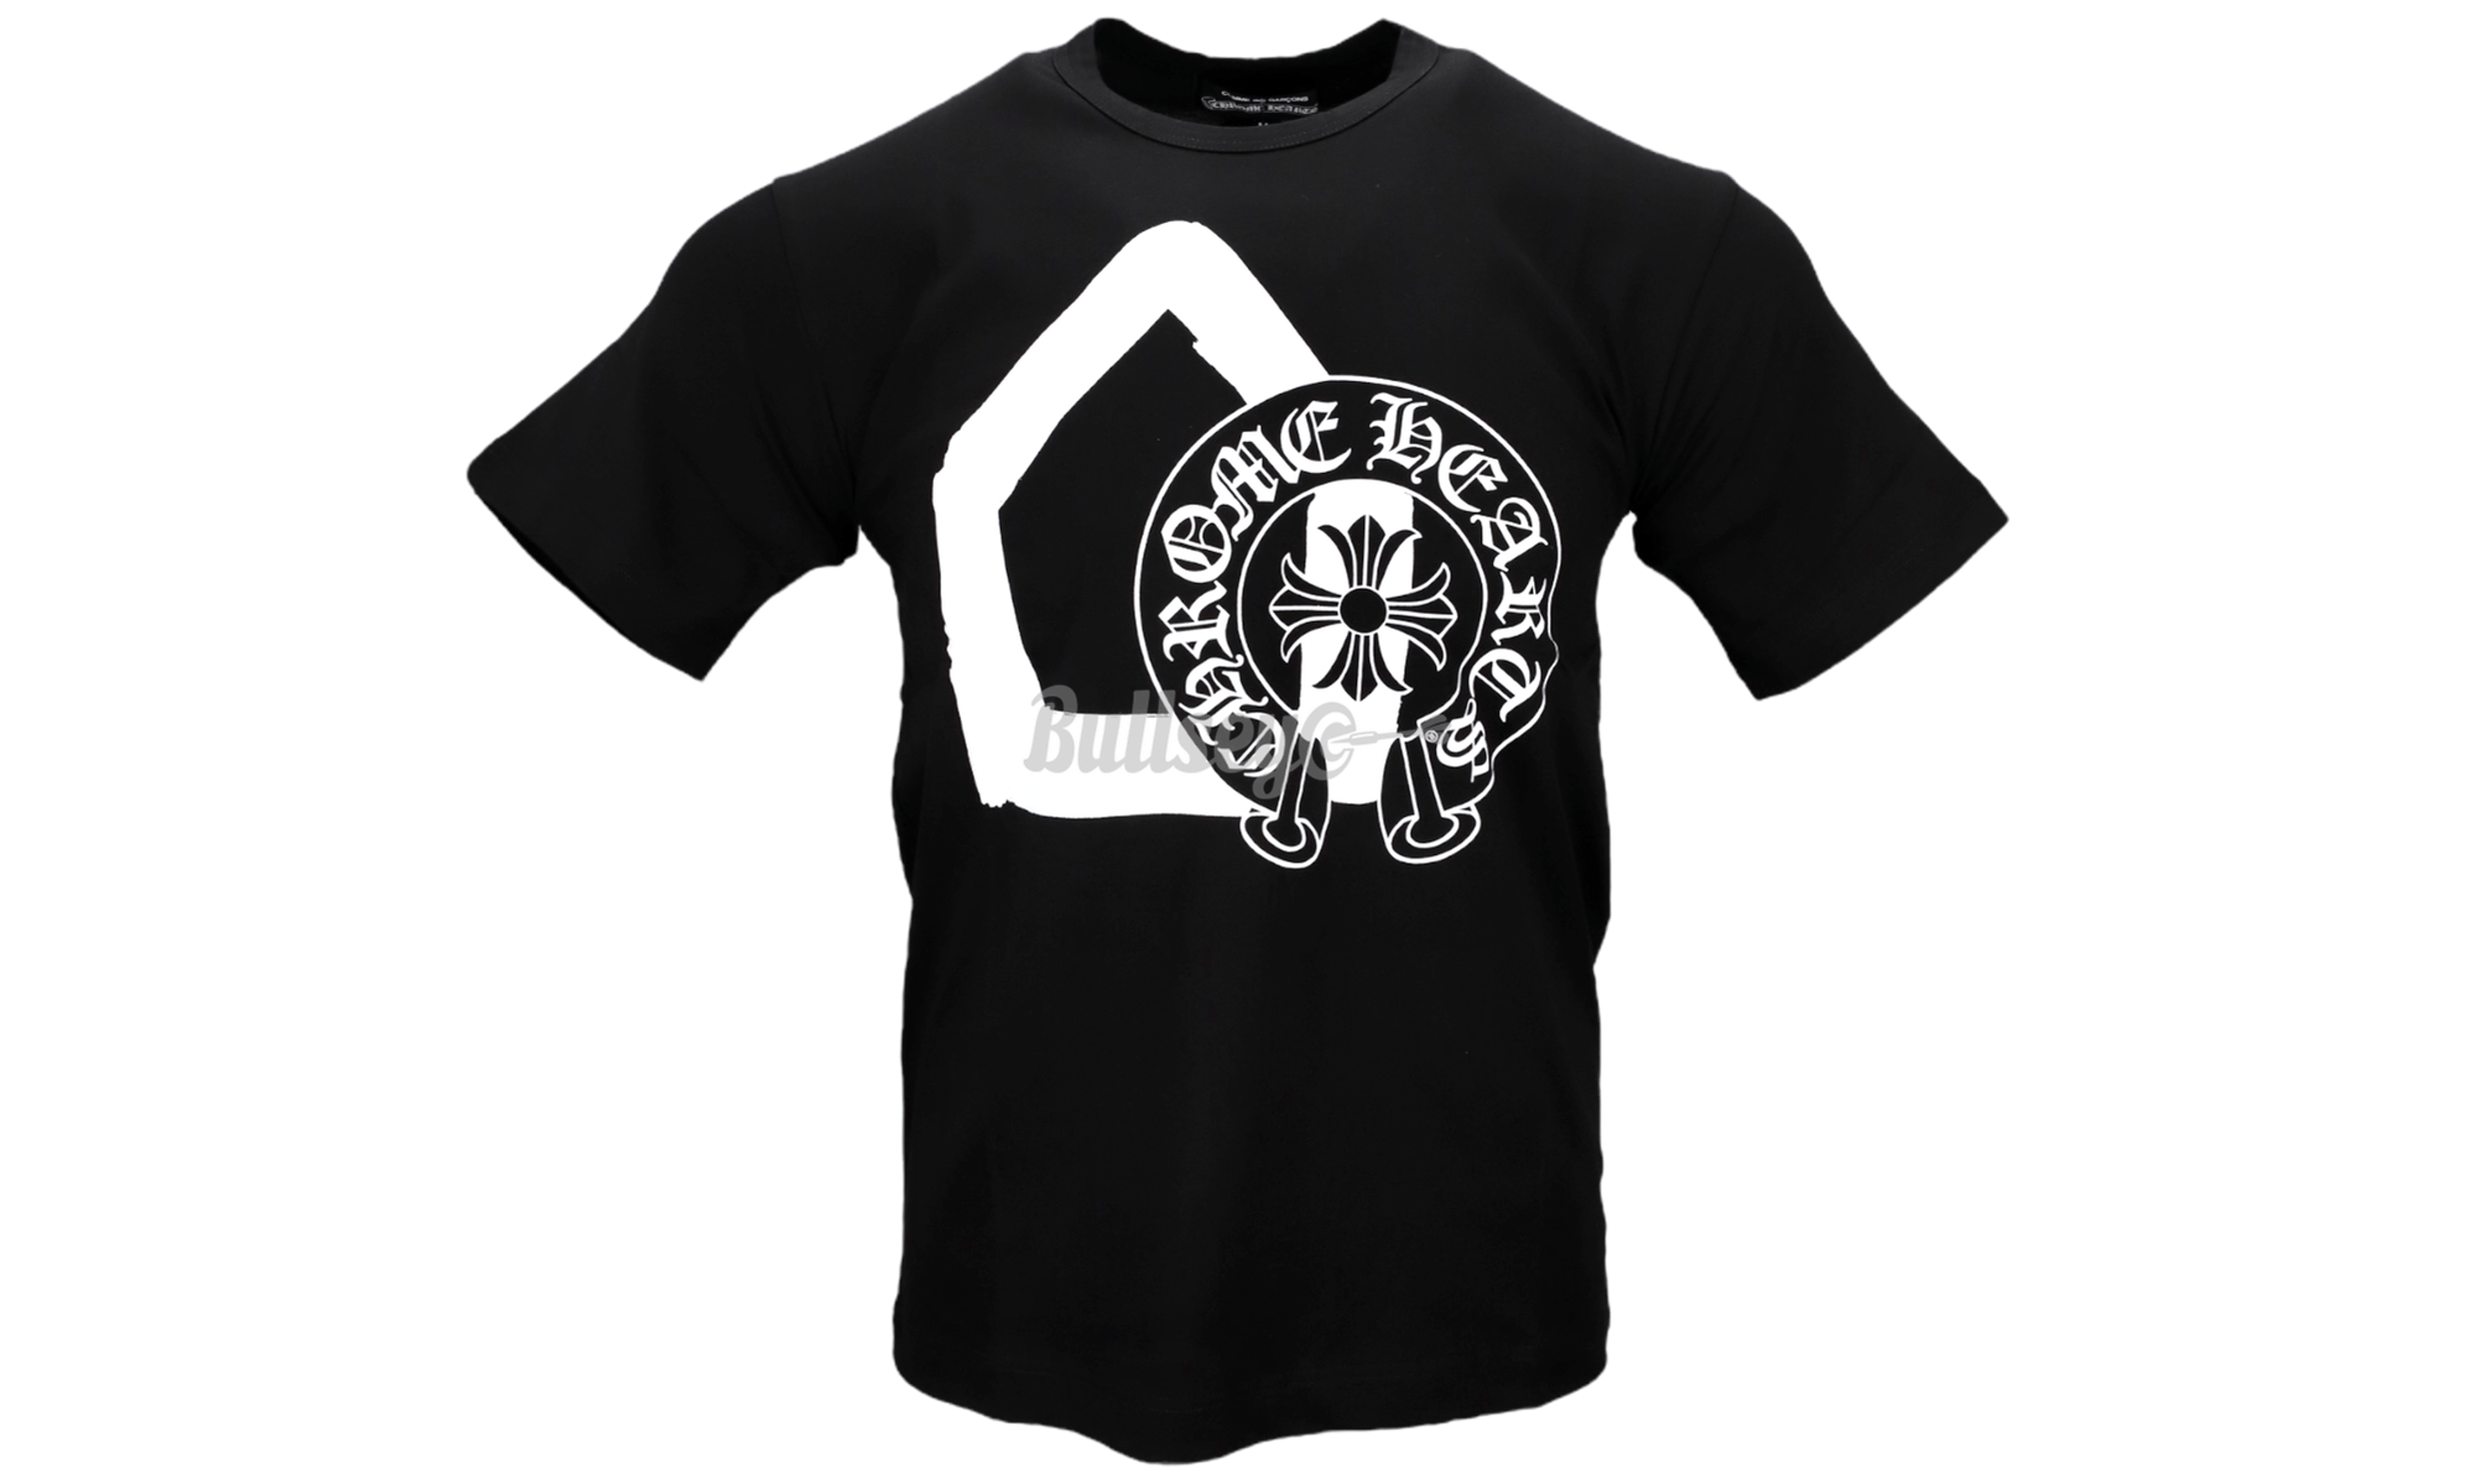 Chrome Hearts x CDG Black T-Shirt